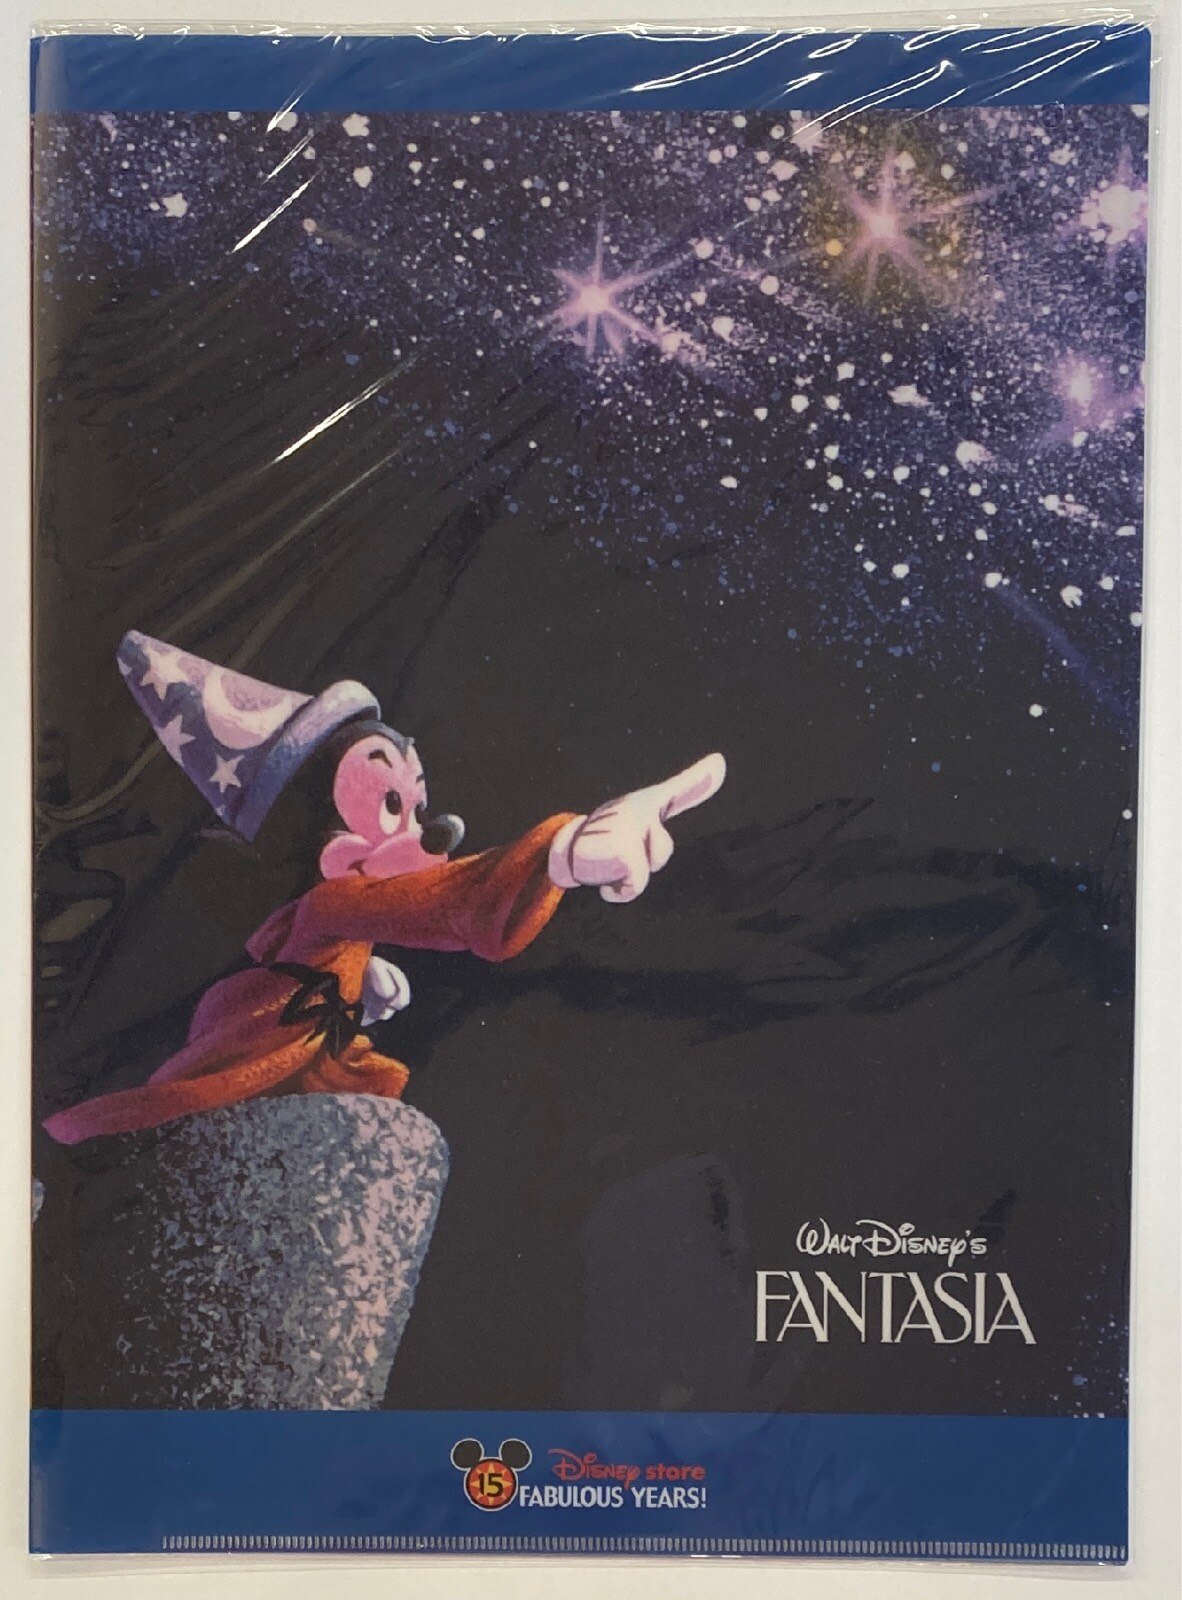 ディズニーストア クリアファイル Fantasia 15 Fabulous Years まんだらけ Mandarake